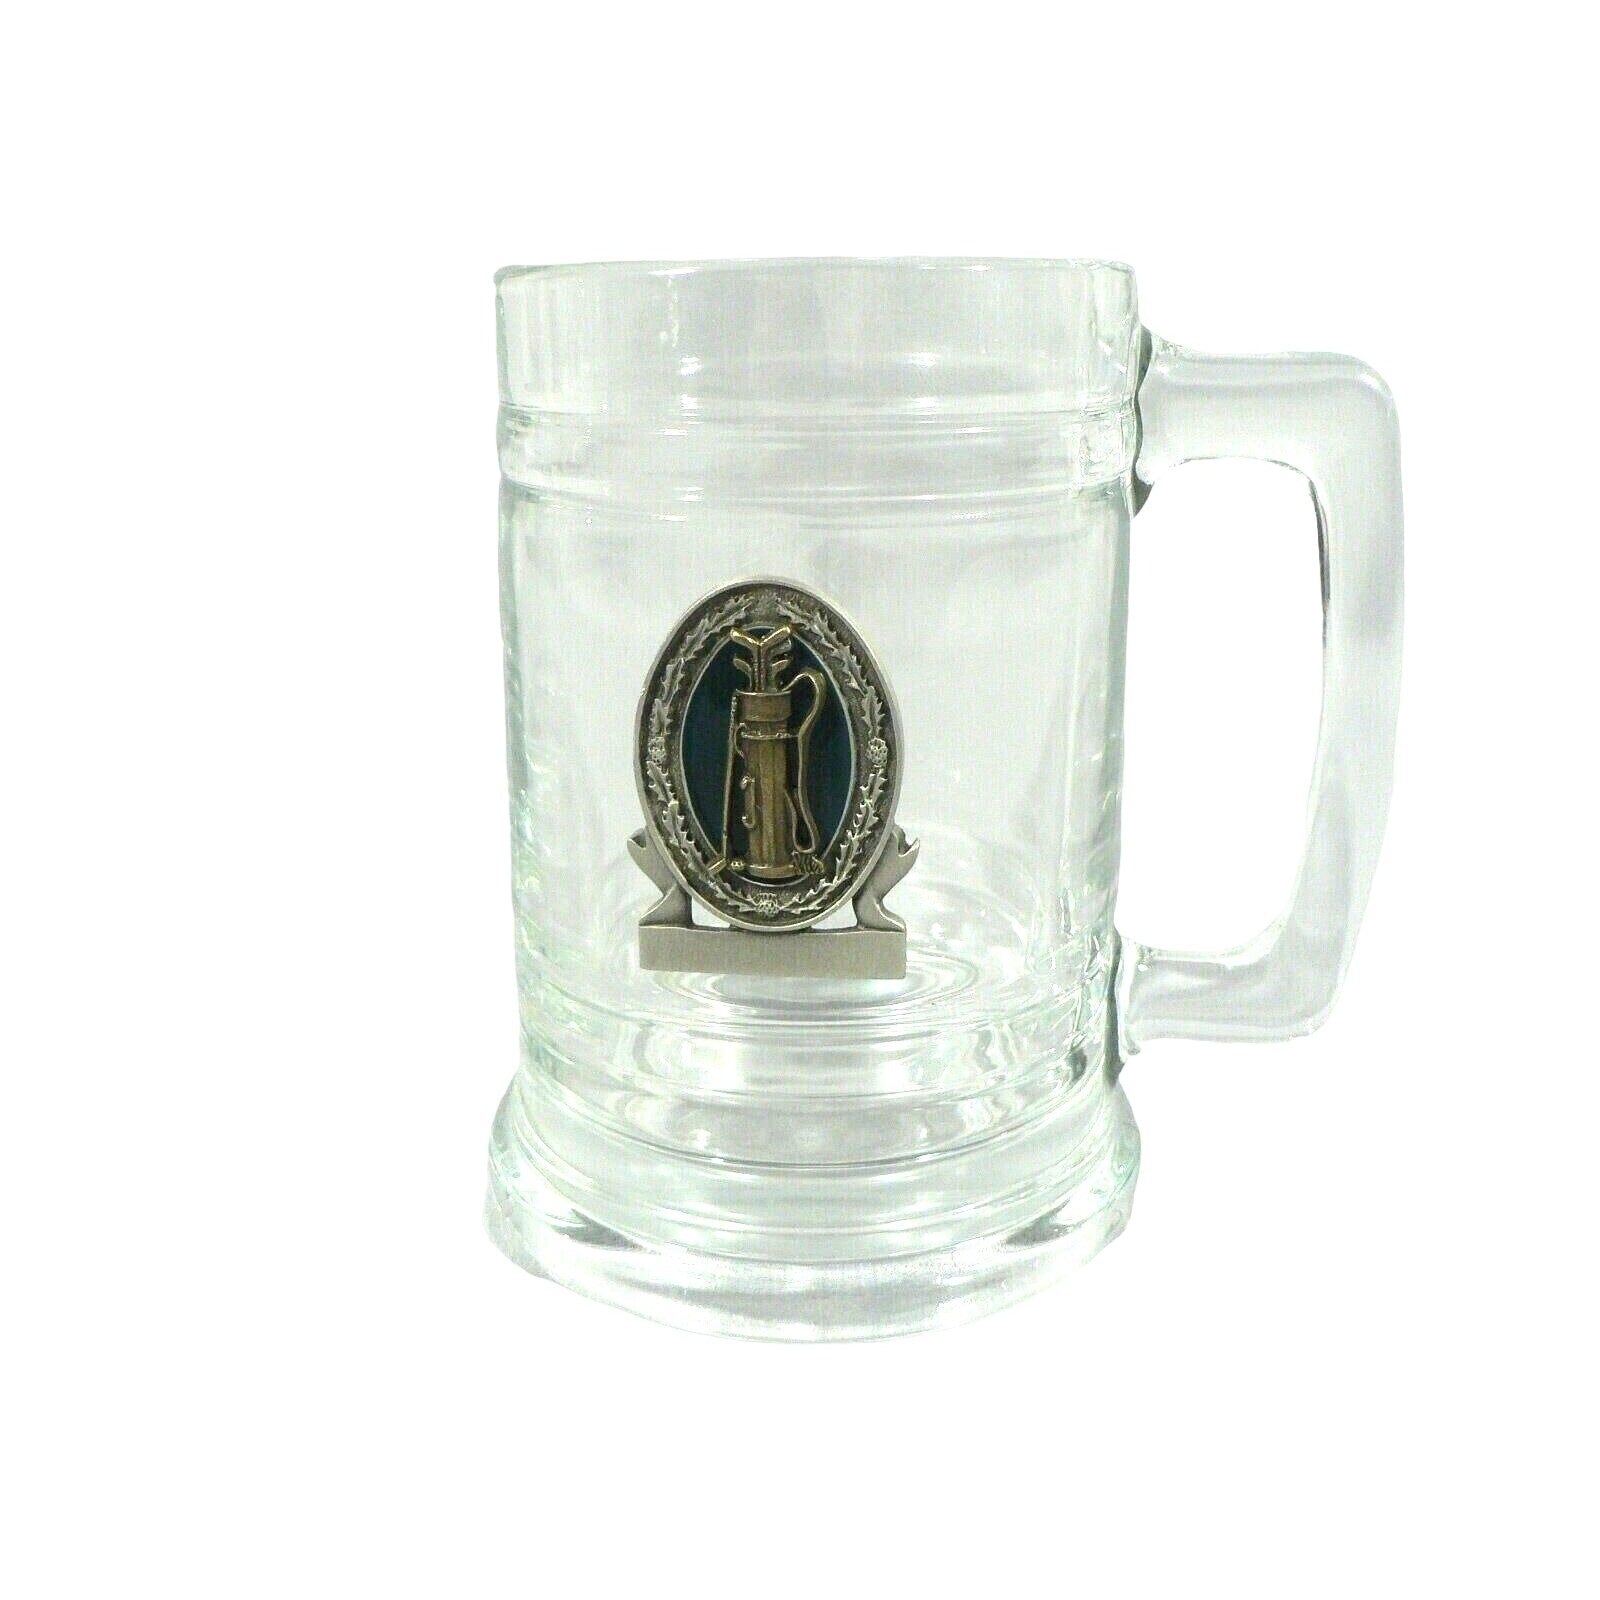 Beverage Beer Mug Desk Pencil Swizzle Stick Holder Golf Emblem Raised Medallion